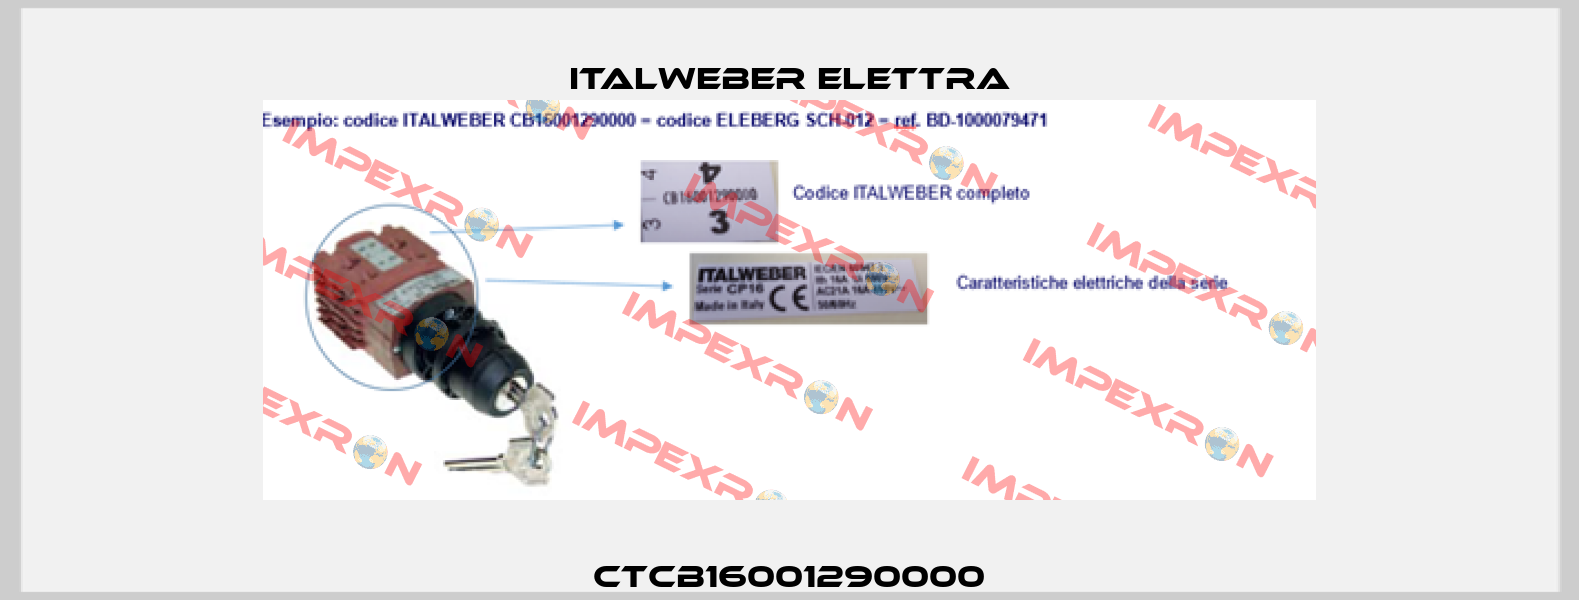 CTCB16001290000 Italweber Elettra